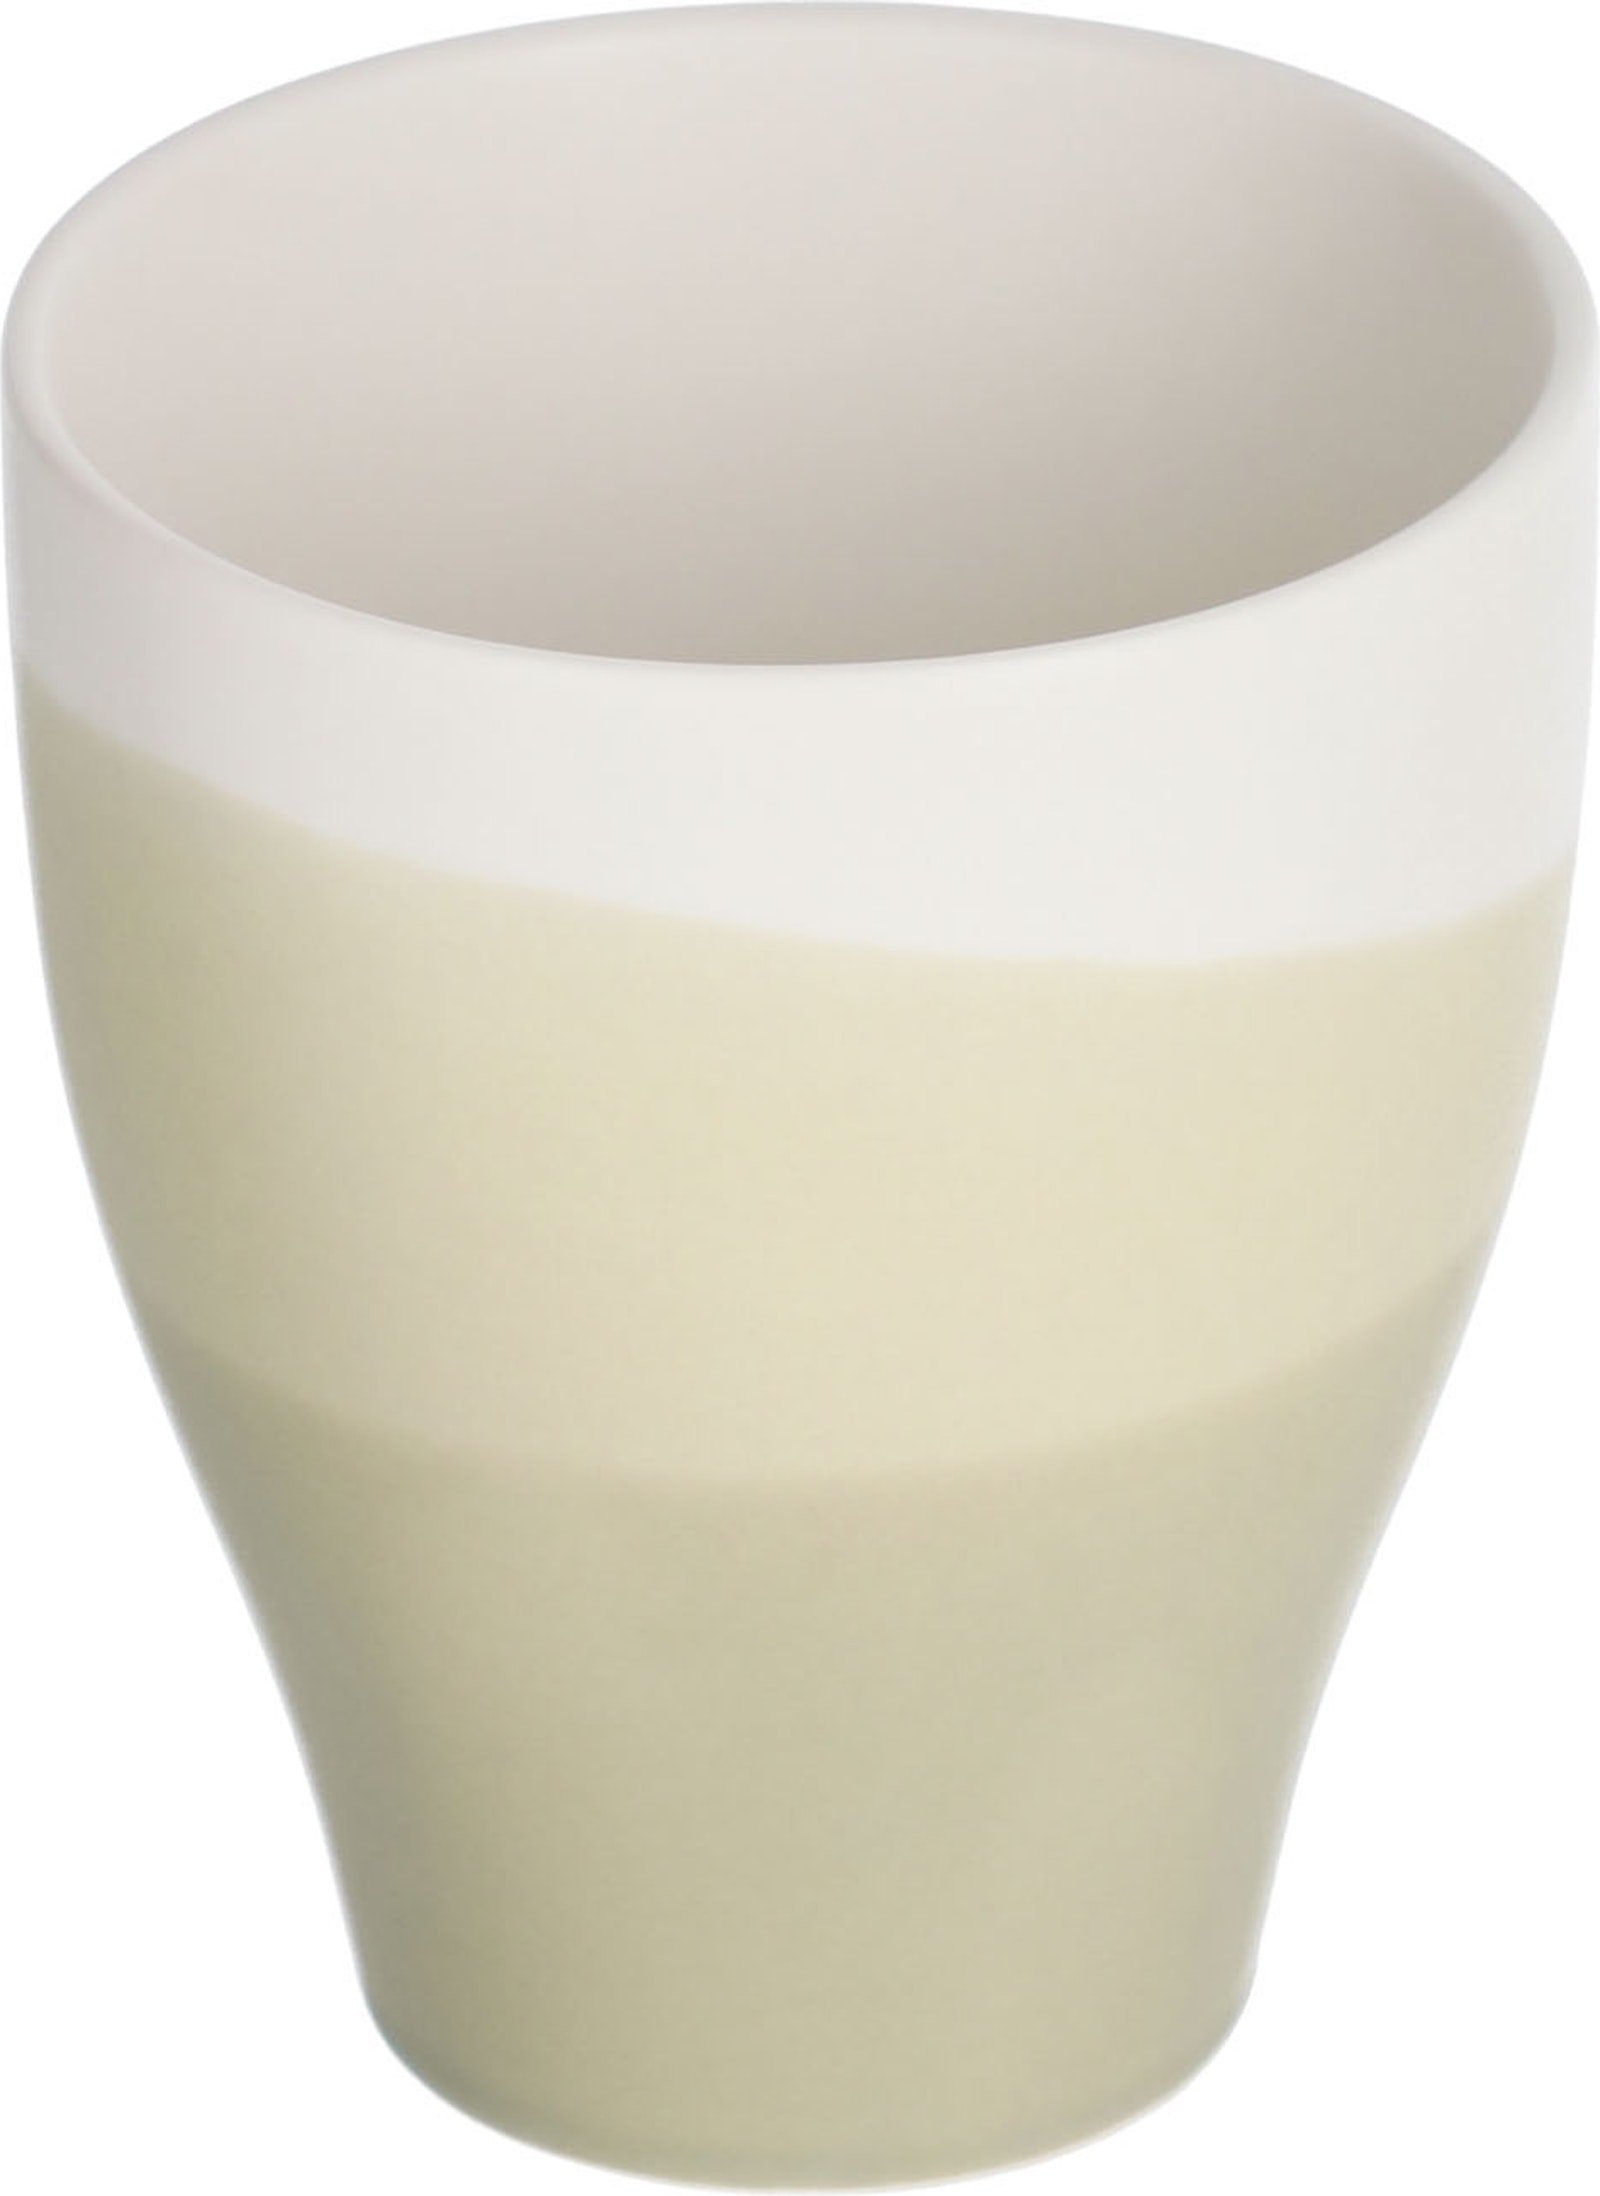 LAFORMA Sayuri stor kop - grøn og hvid porcelæn